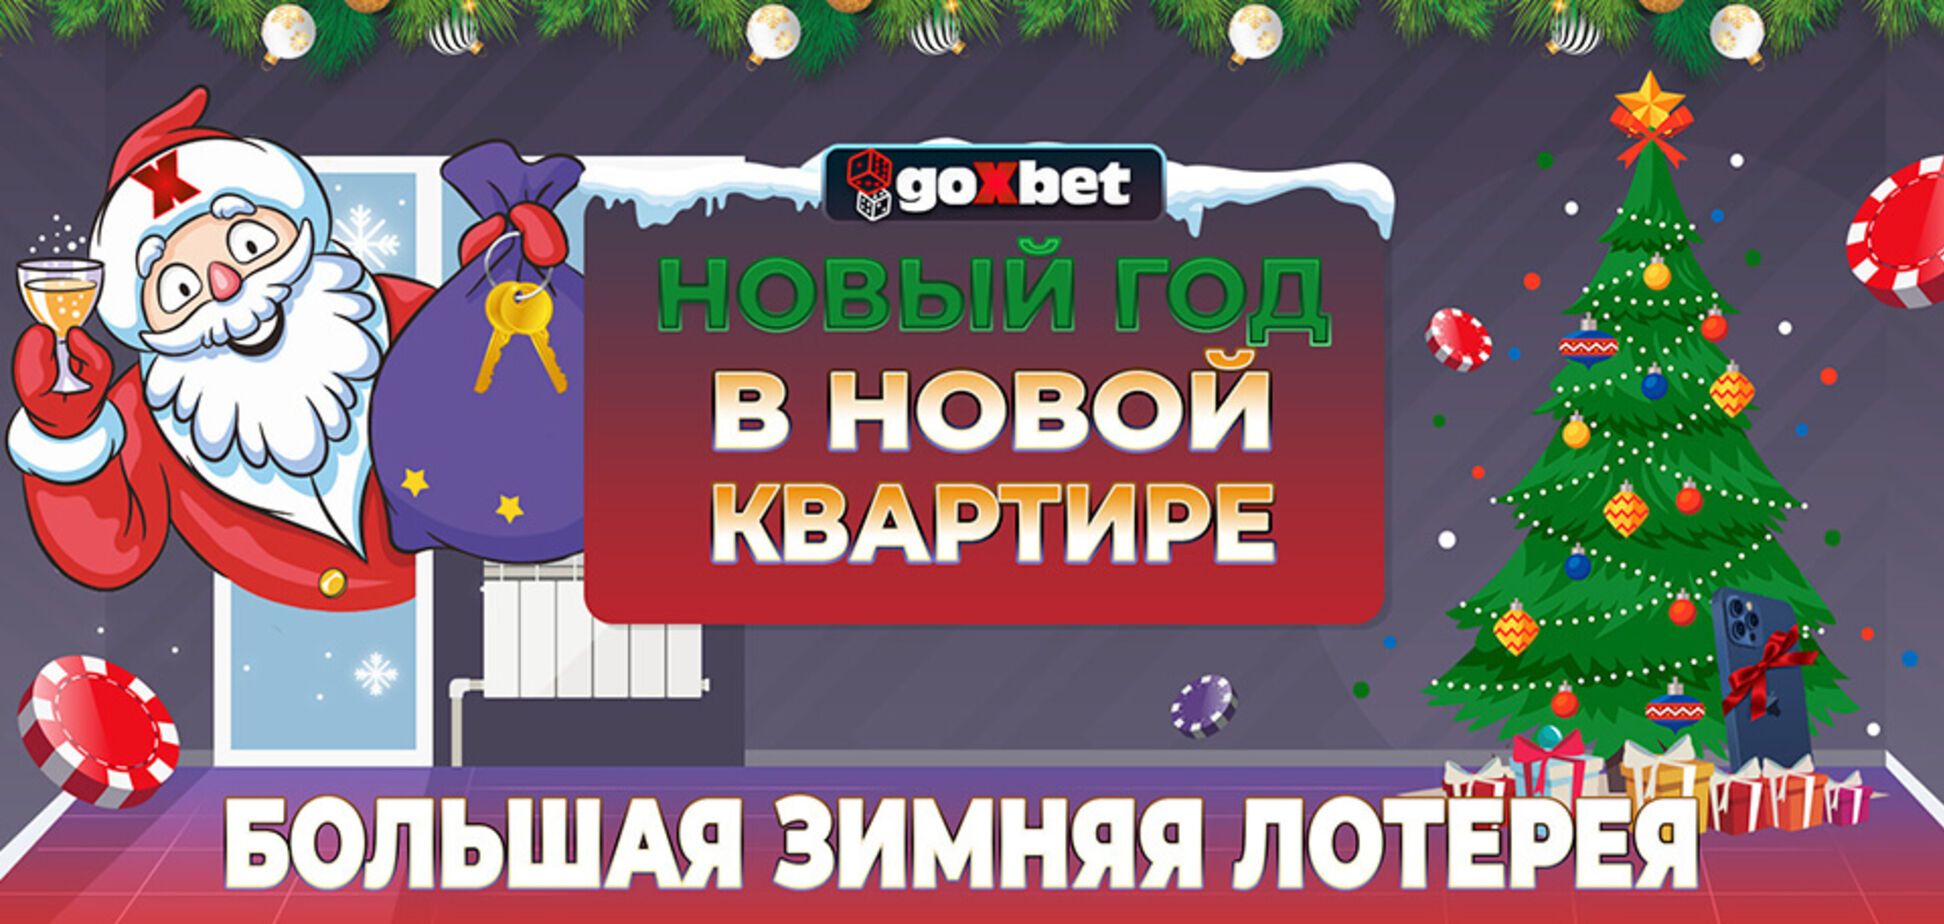 GoXbet организовало большую зимнюю лотерею с грандиозными призами